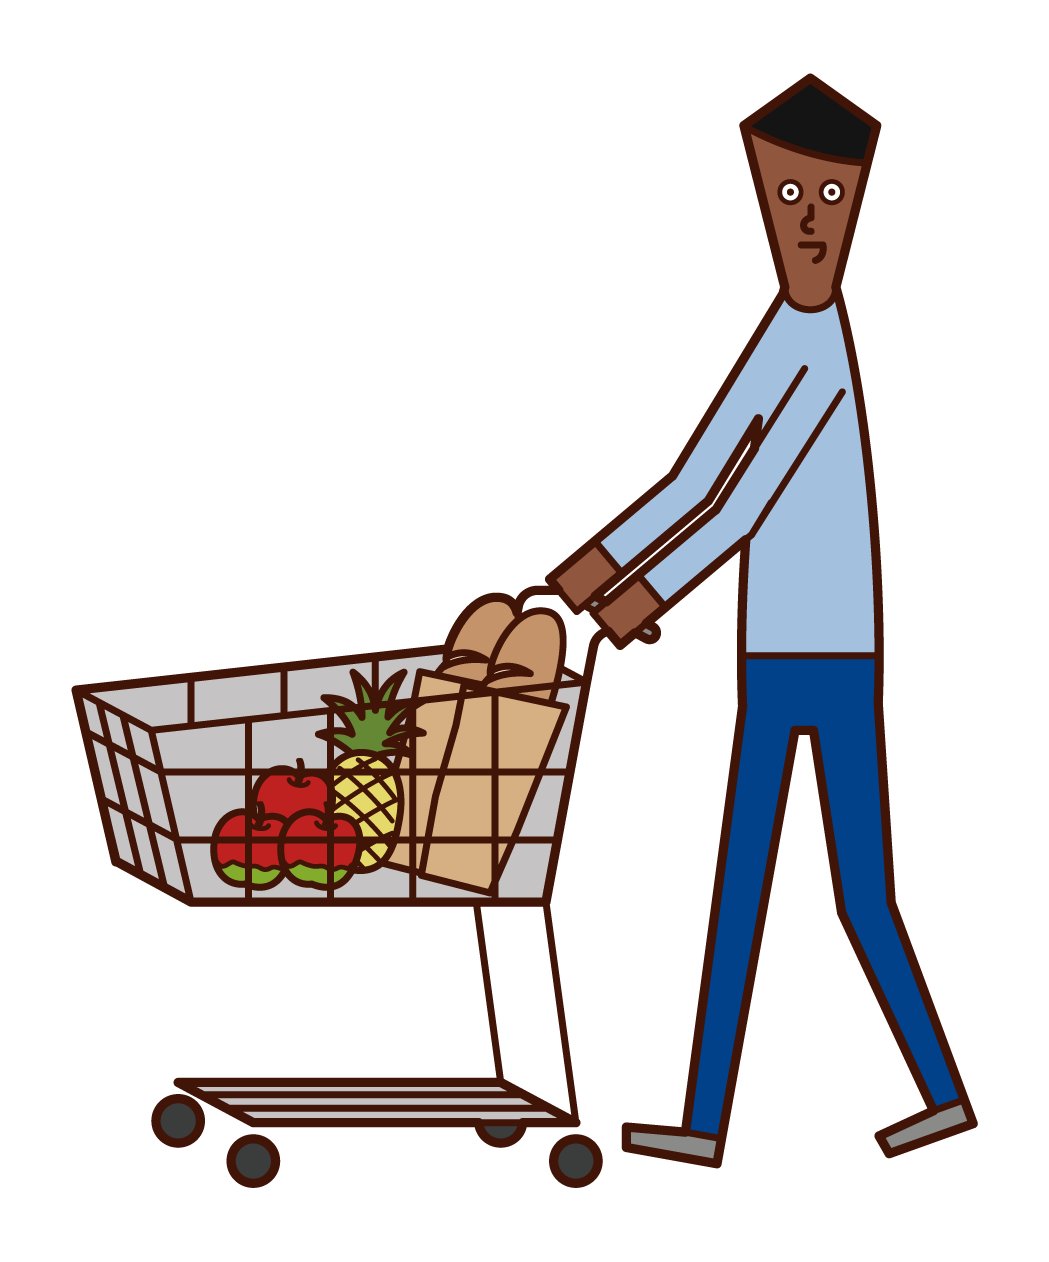 슈퍼마켓에서 쇼핑하는 사람 (남성)의 그림